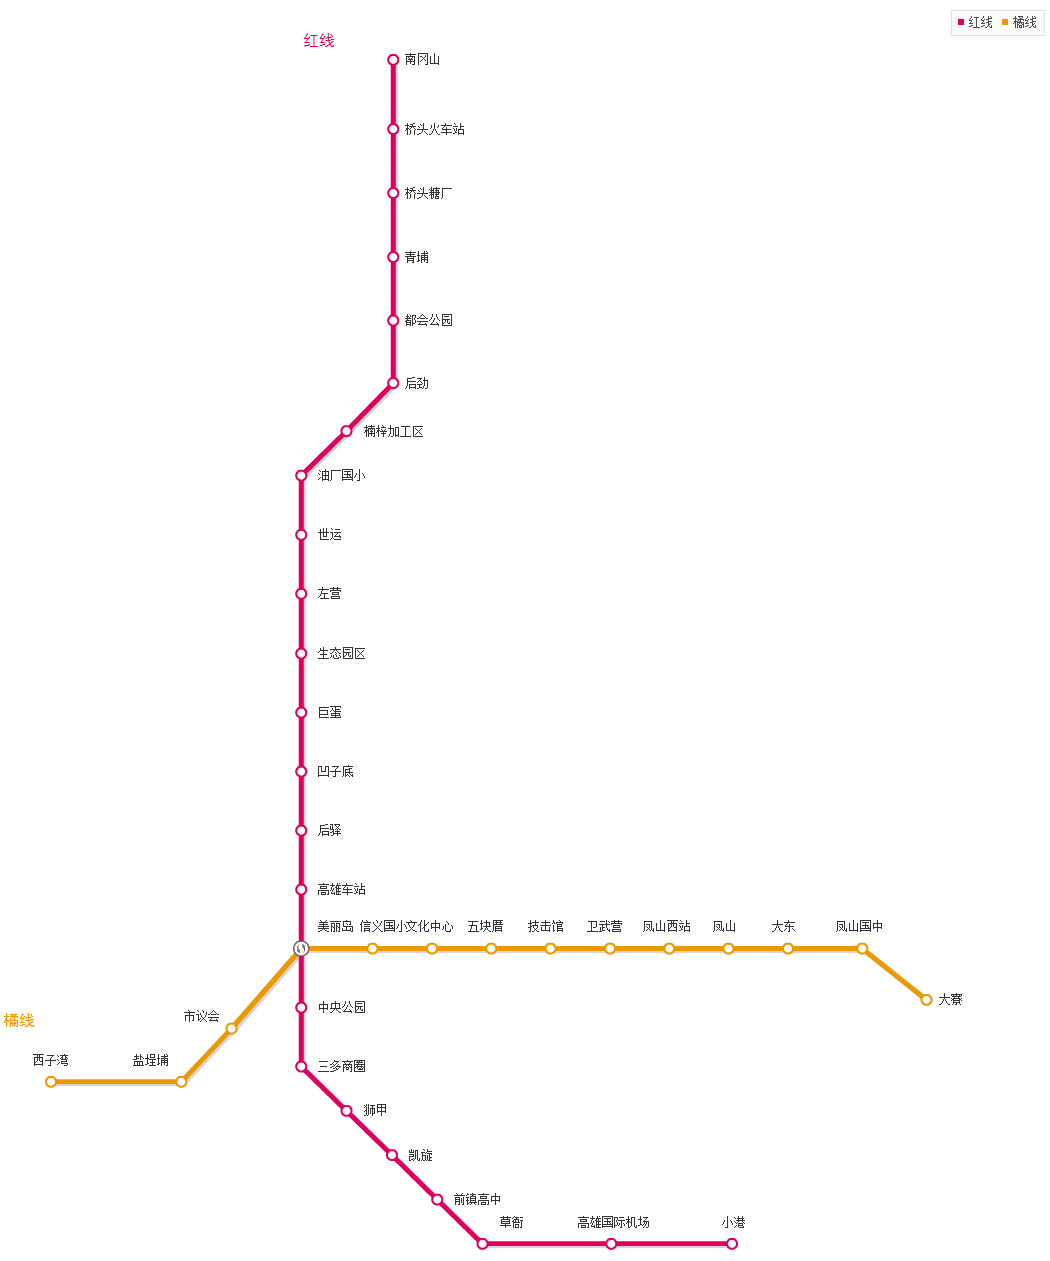 高雄地铁线路图